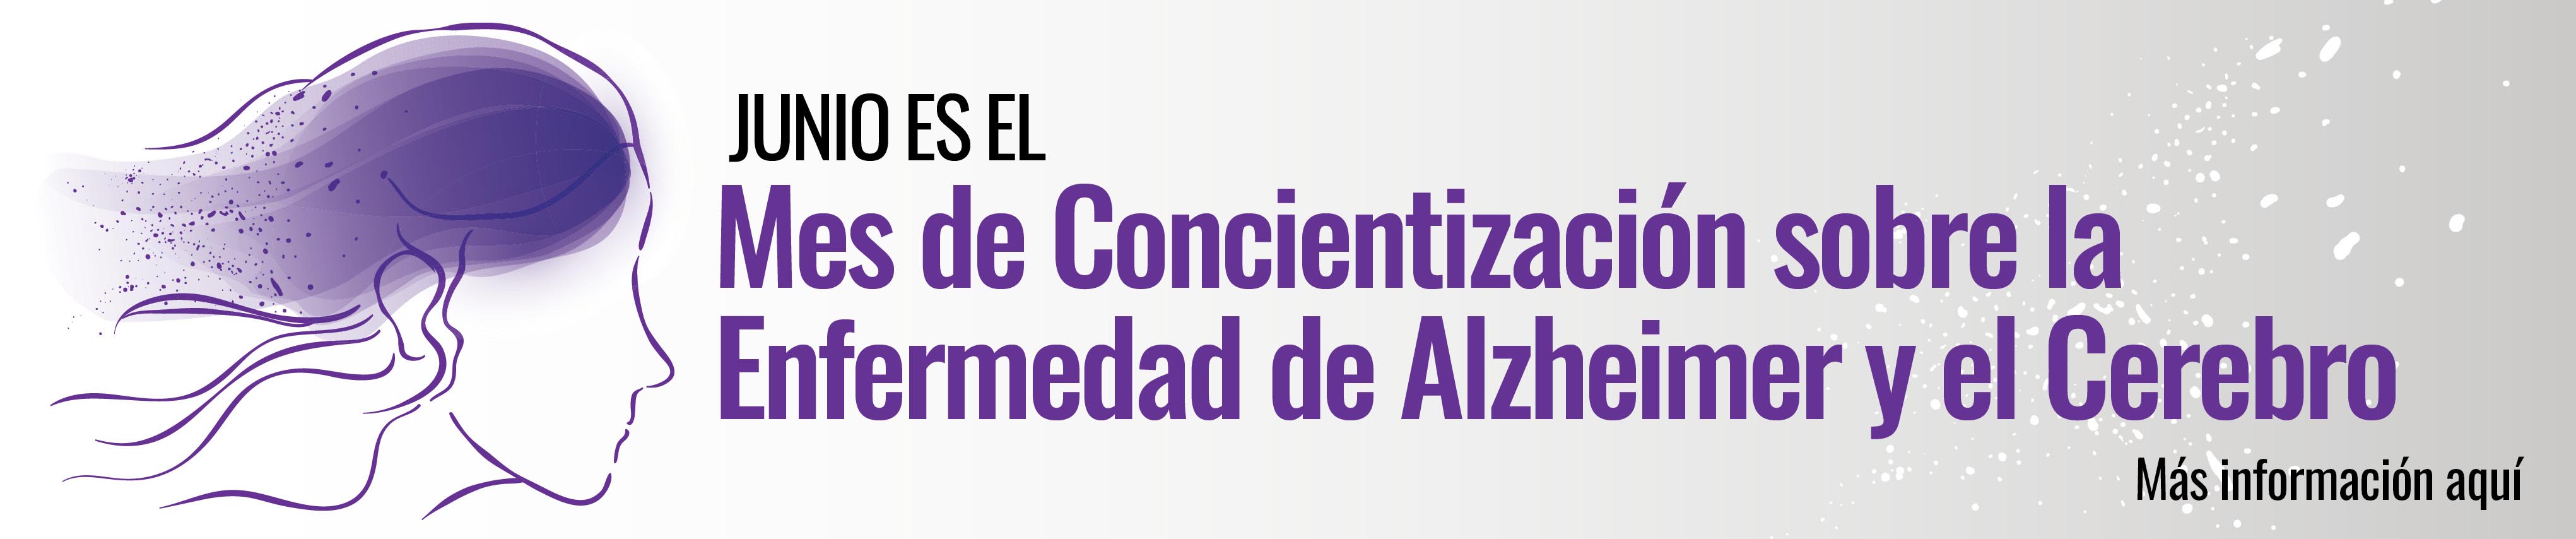 Junio es el Mes de Concientización sobre la Enfermedad de Alzheimer y el Cerebro公司